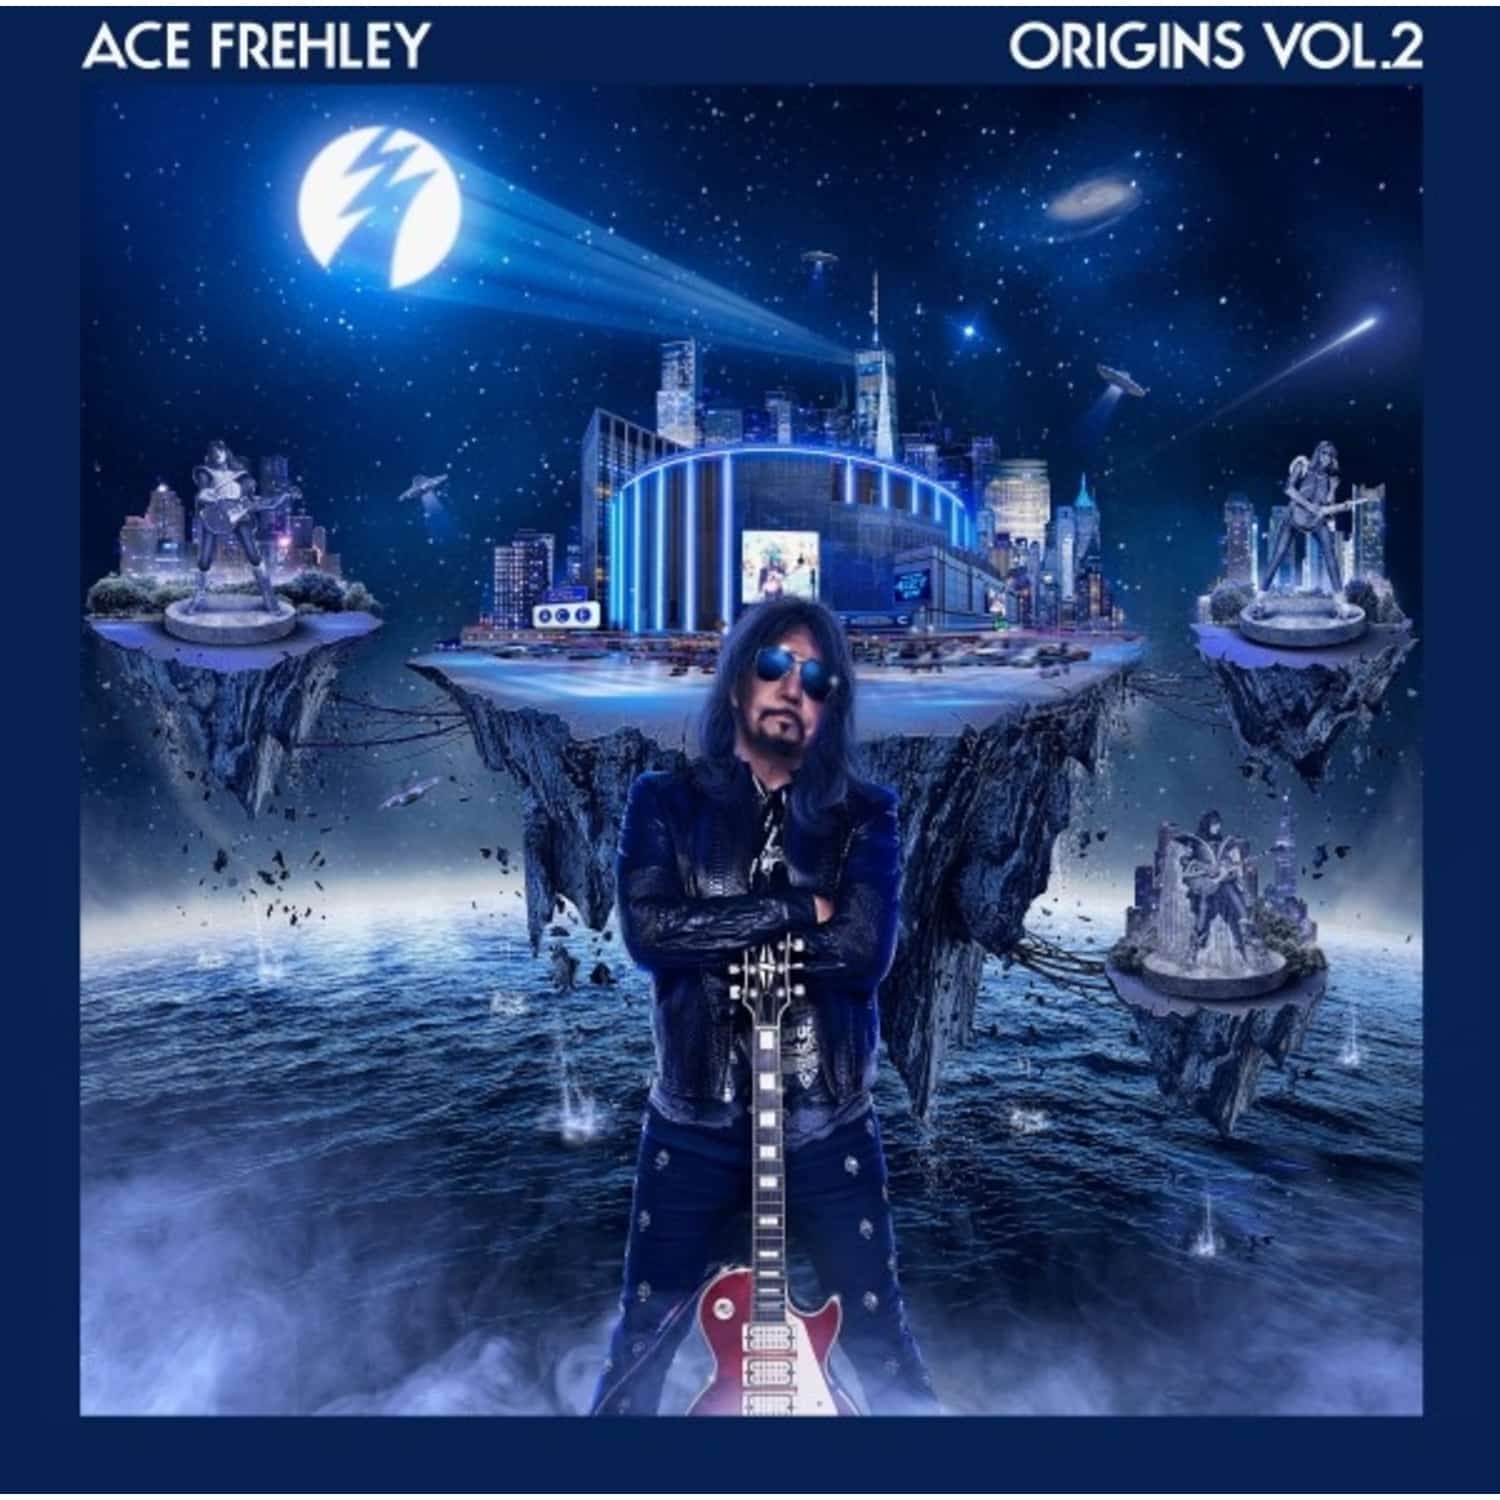  Ace Frehley - ORIGINS VOL.2 XMAS EDITION 